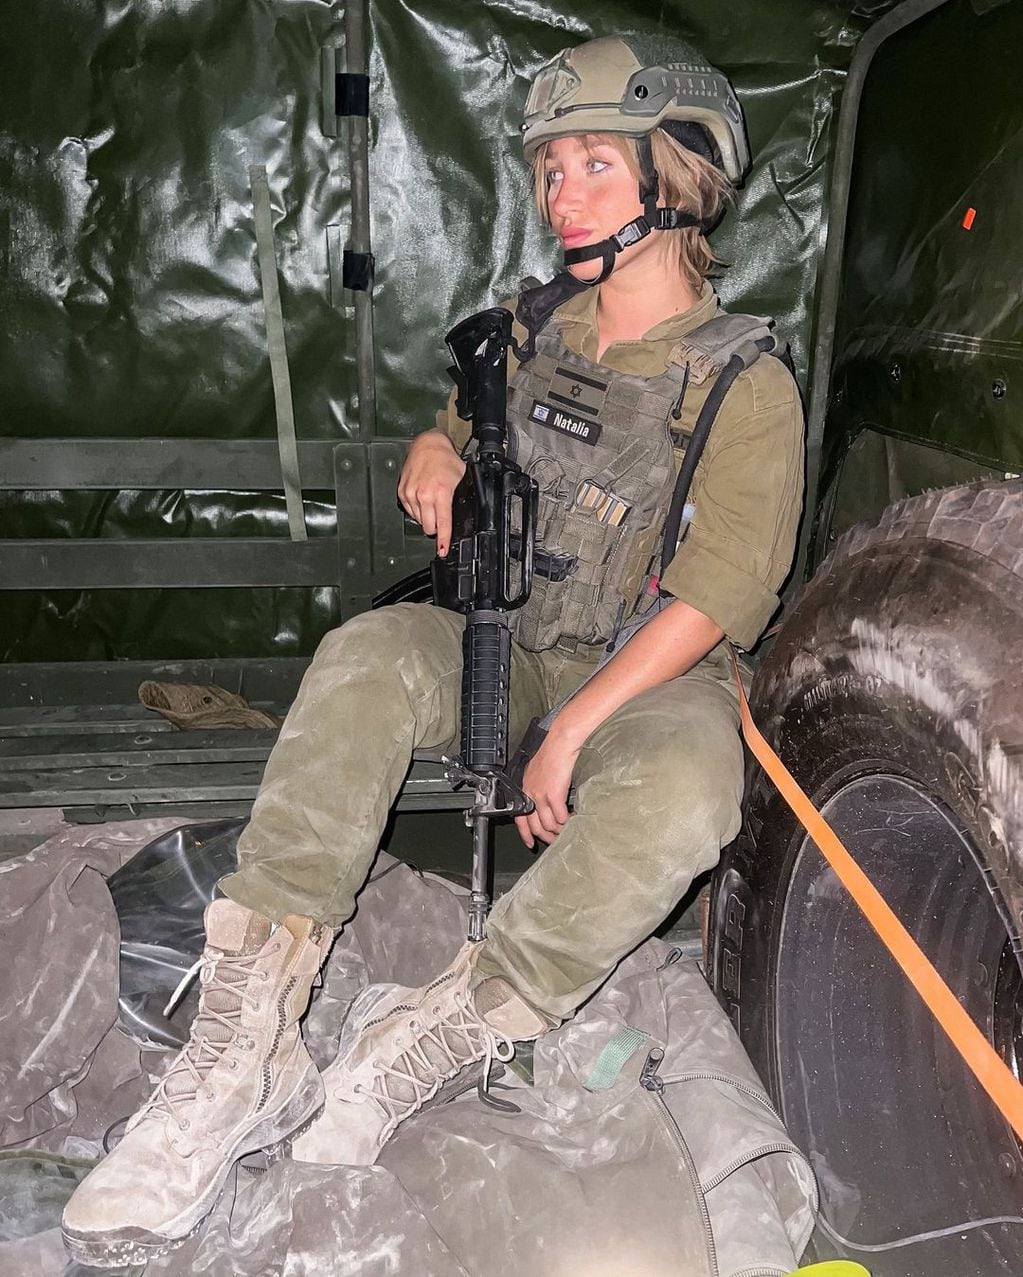 La influencer israelí Natalia Fadeev se sumó al llamado del ejército de Israel y lucha contra Hamás